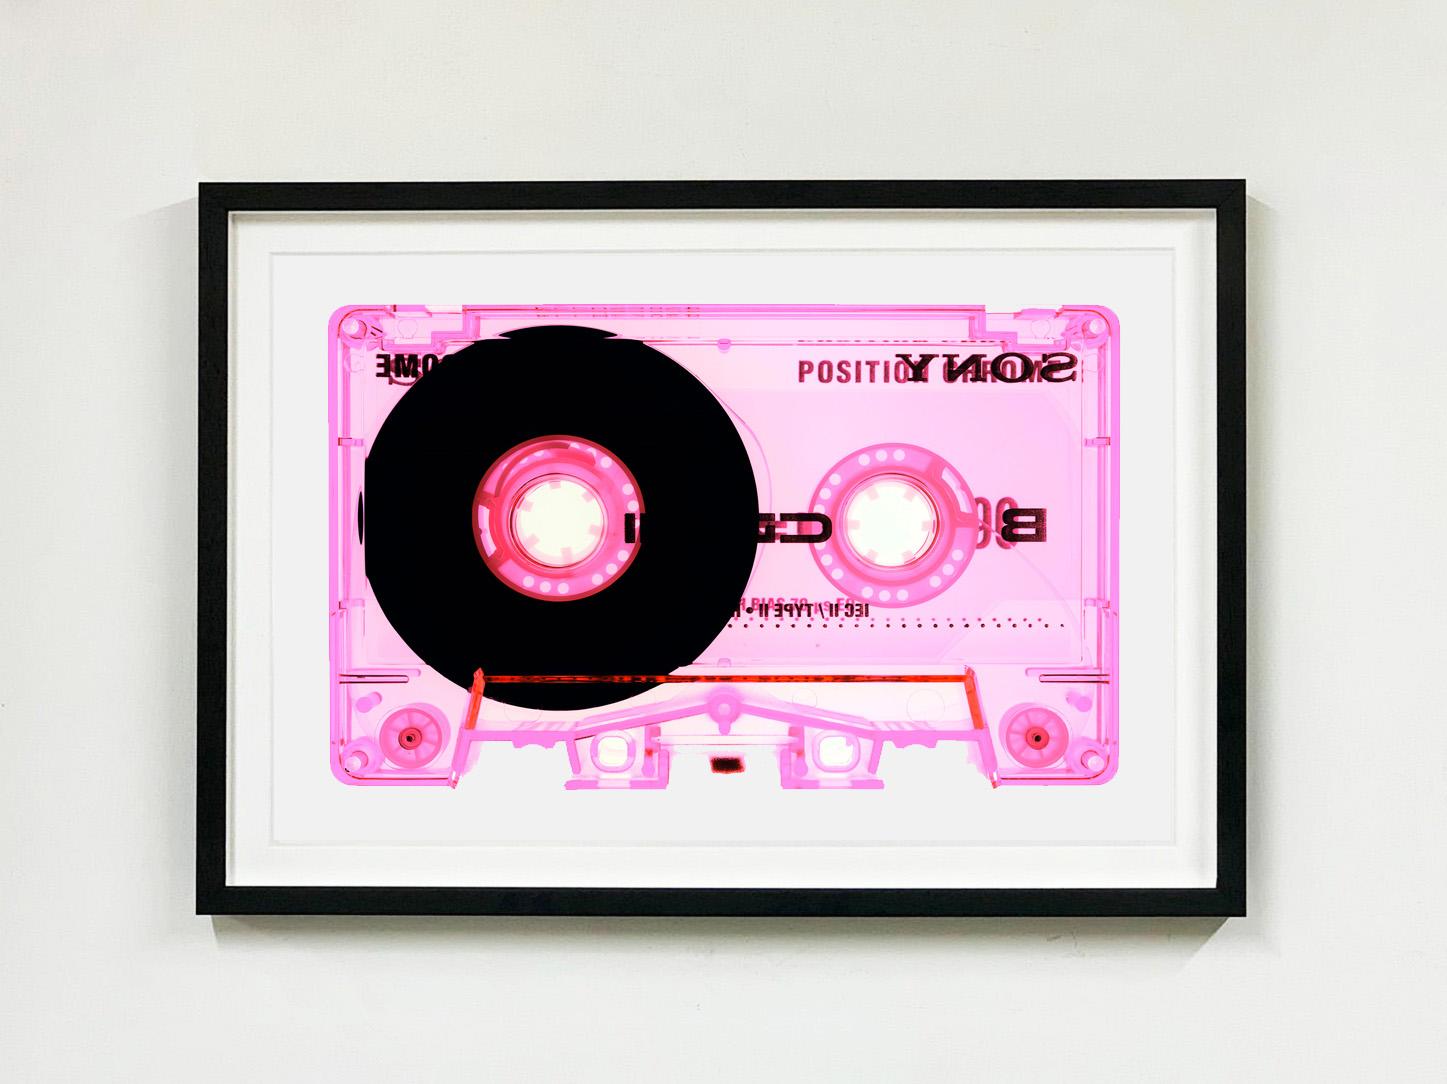 Type II Pink, de la collection de cassettes Heidler & Heeps - The B Sides.
Les collaborations Heidler & Heeps sont des représentations créatives du passé personnel et de la personnalité de Natasha Heidler et Richard Heeps. Les bandes sont